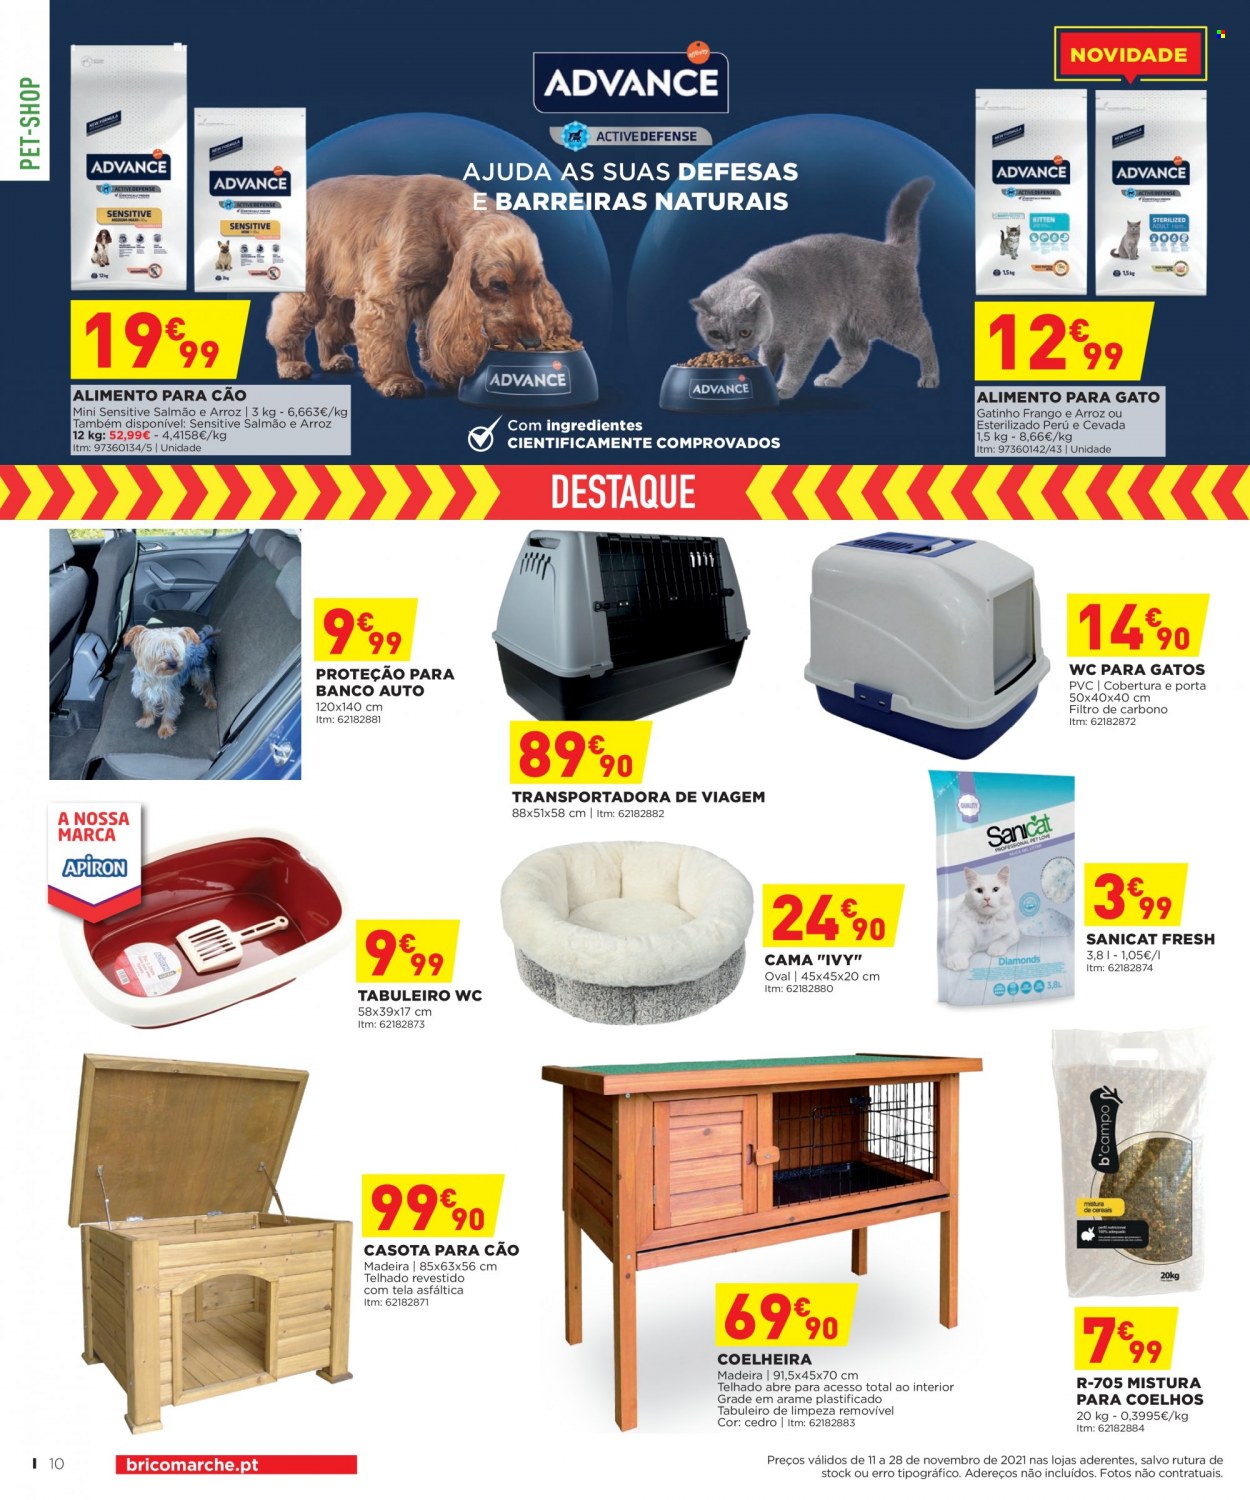 thumbnail - Folheto Bricomarché - 11.11.2021 - 28.11.2021 - Produtos em promoção - alimentos para gatos, alimentos para cães, cama. Página 10.